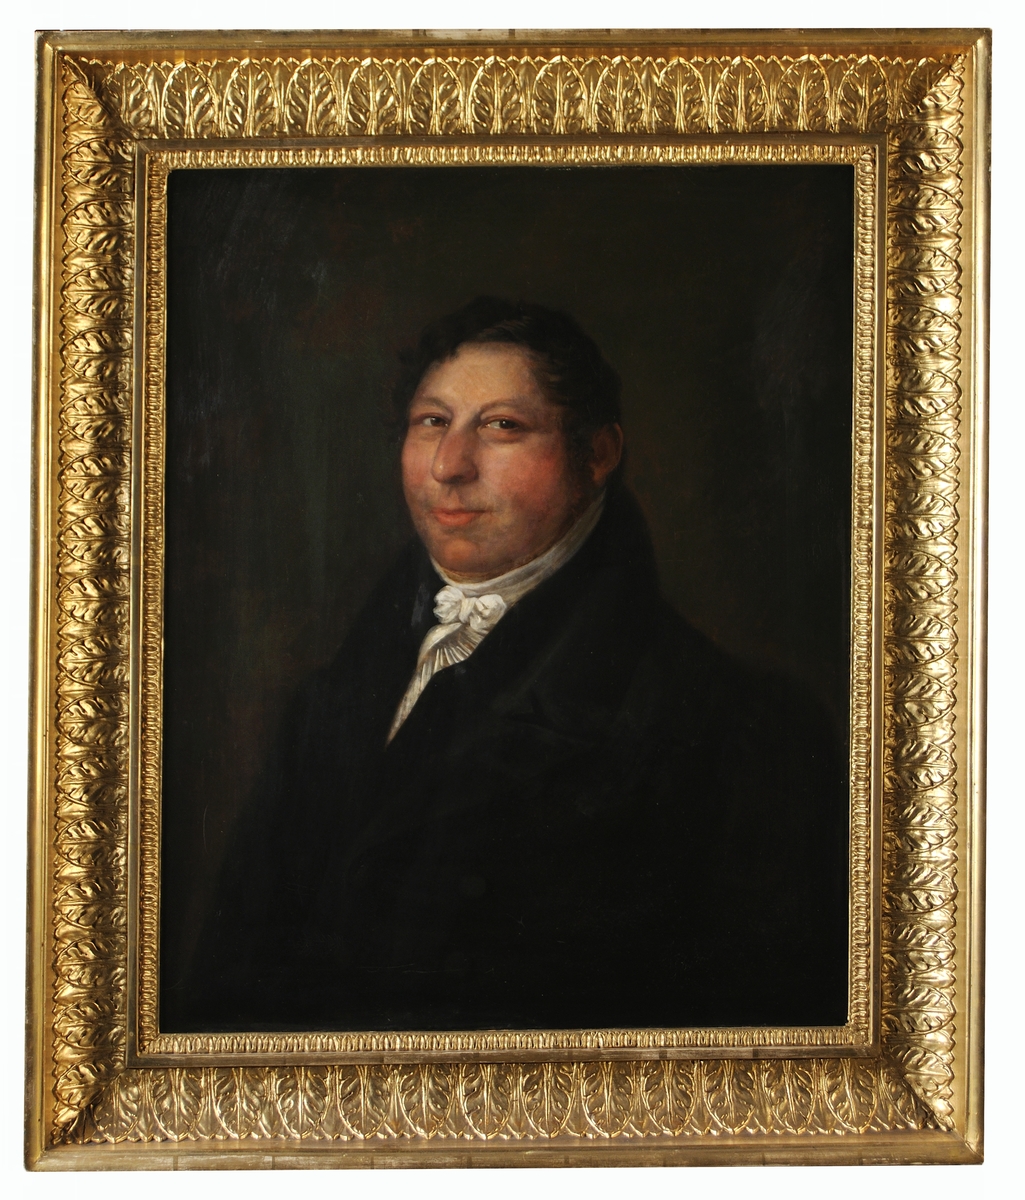 Porträtt i profil snett från vänster av Per Christian Rettig, grundare av Rettig & Co i Gävle.